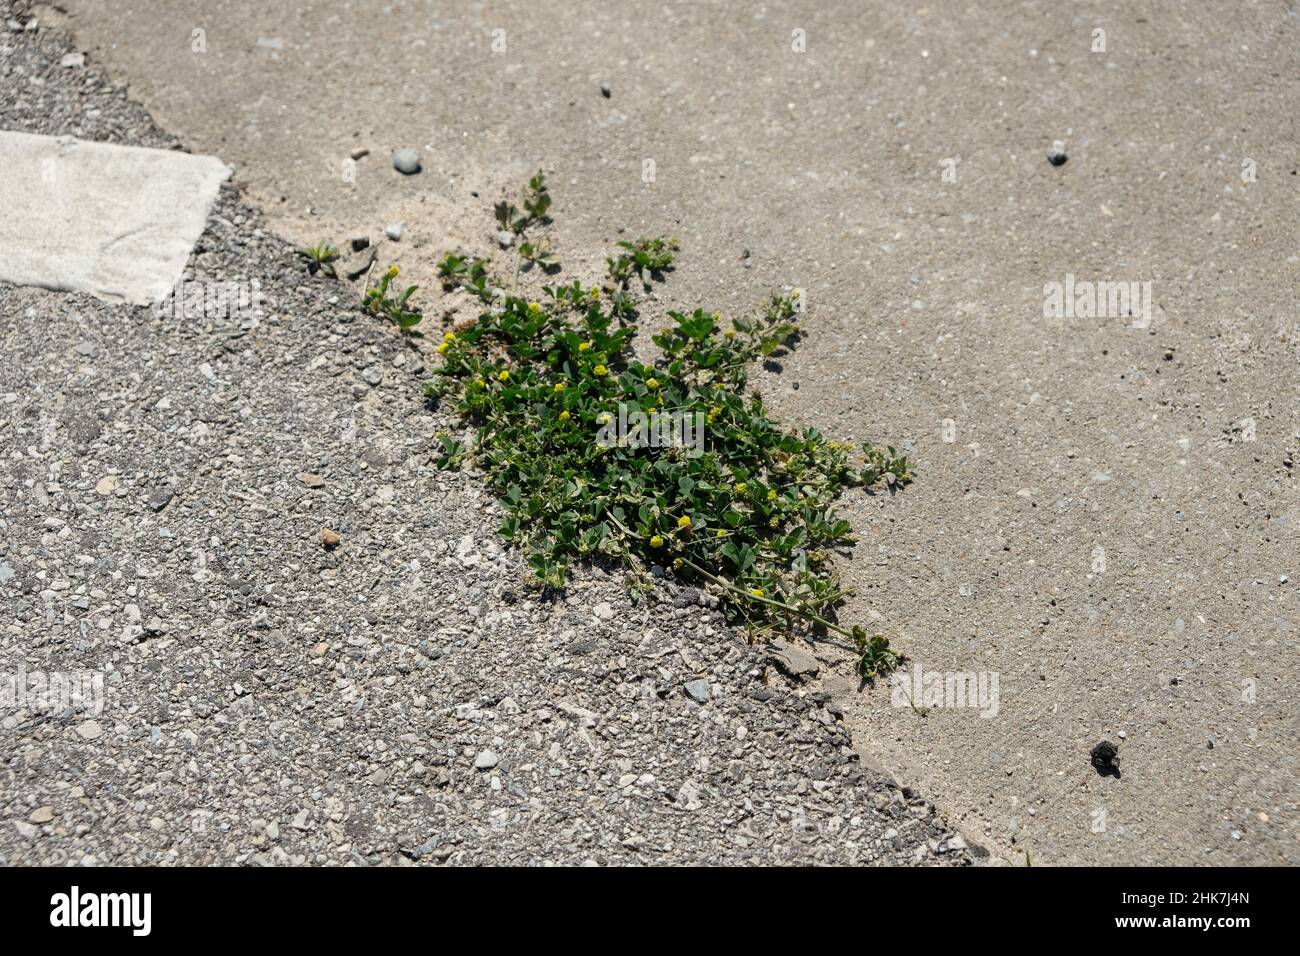 La durée de vie des plantes augmente à travers un petit espace entre l'asphalte et le béton. Banque D'Images